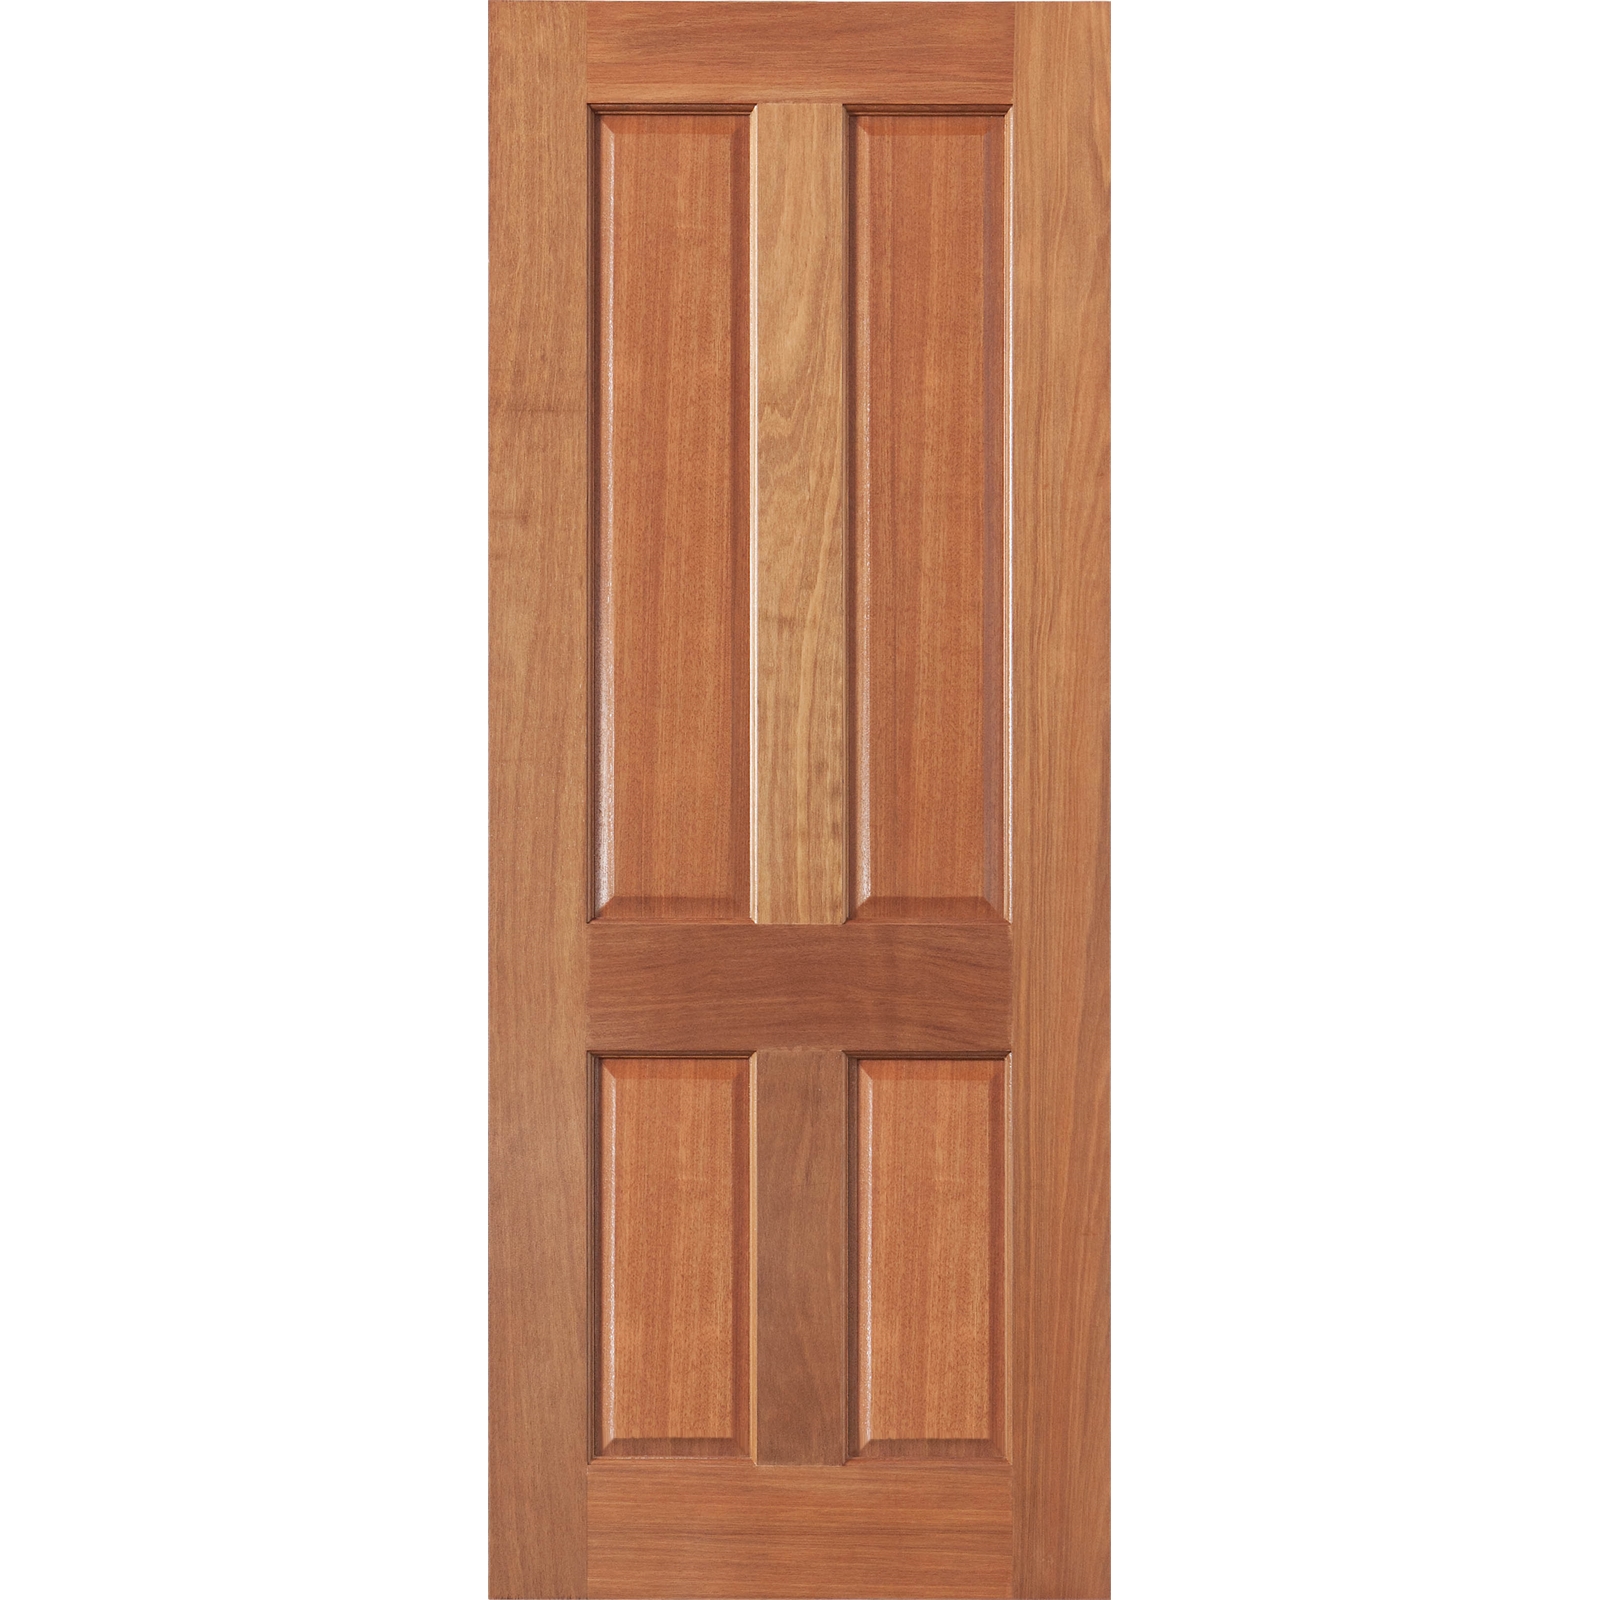 Woodcraft Doors 2040 x 820 x 40mm Lace Solid 4 Panel Entrance Door